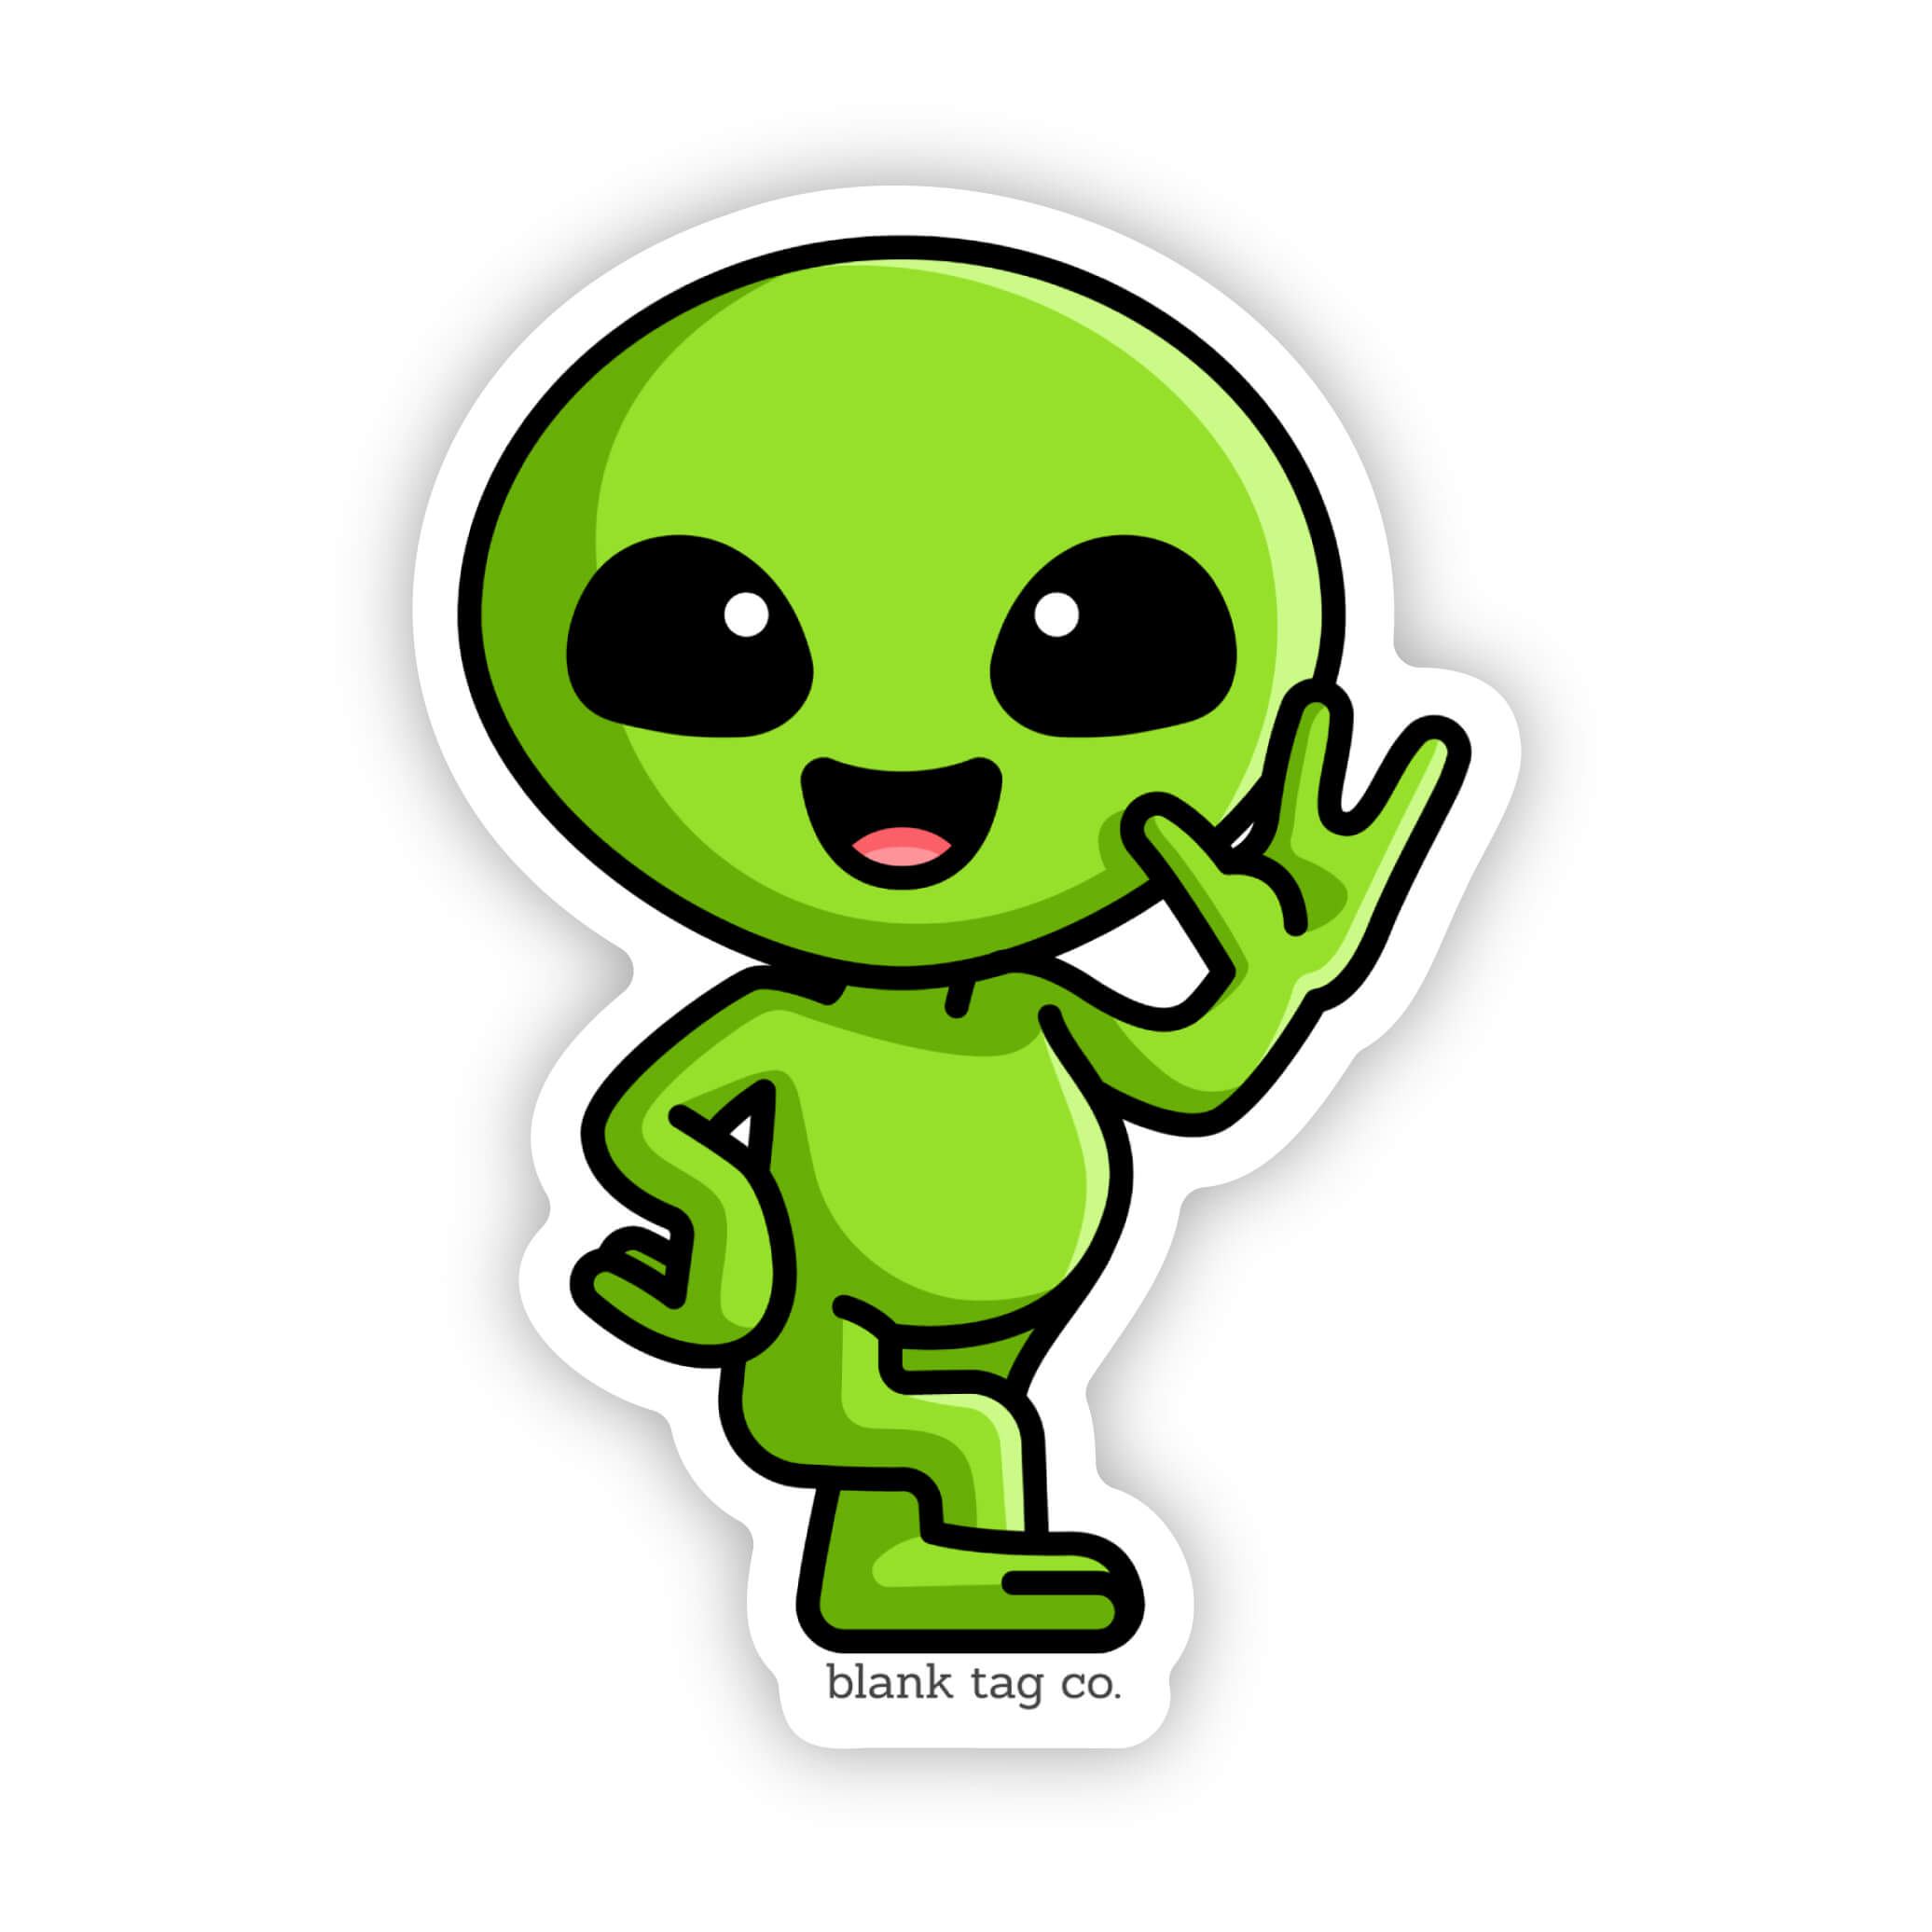 The Alien Sticker